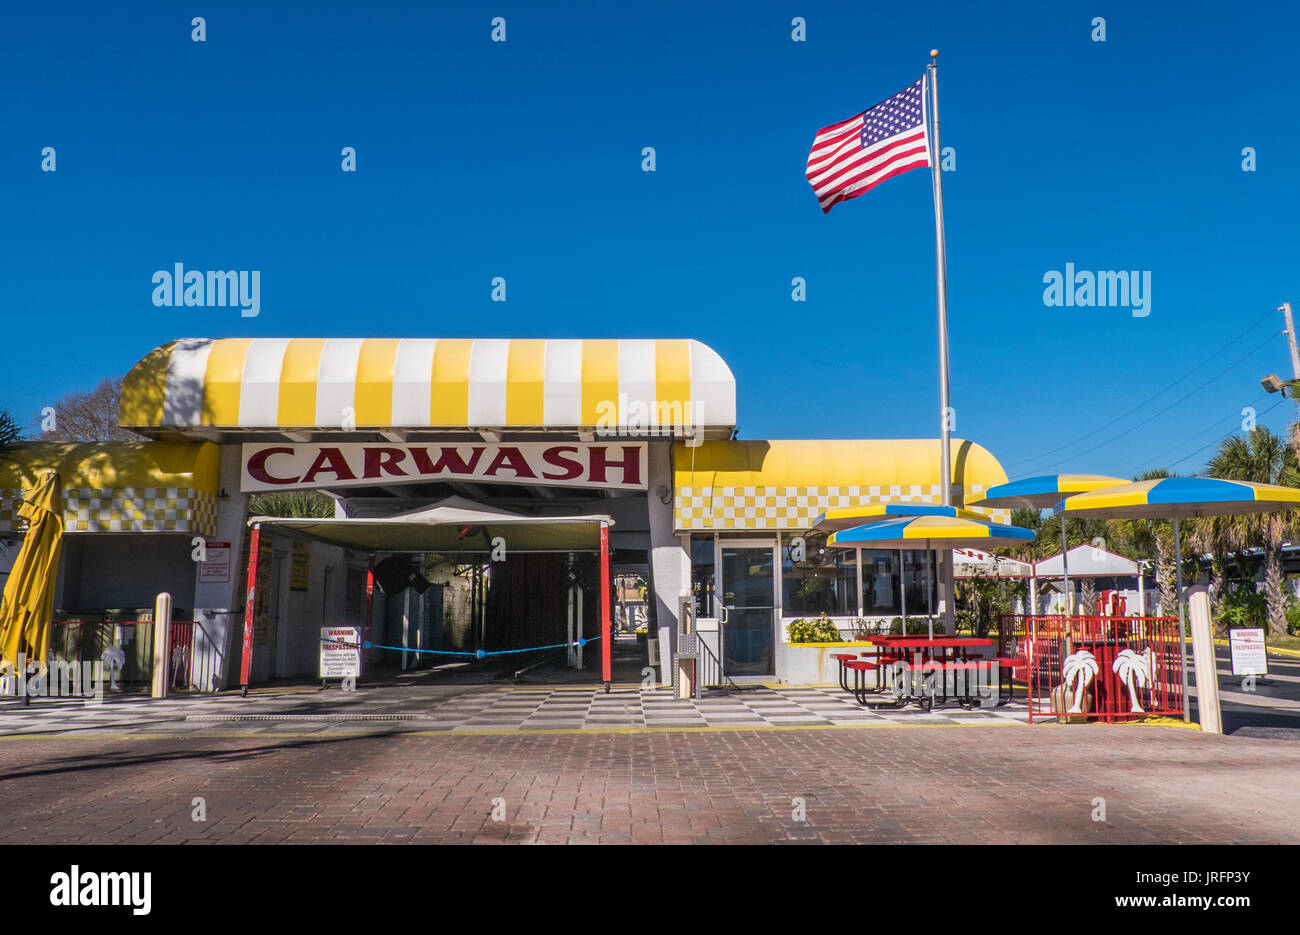 Americana classique...un style années 1950, lavage de voiture avec le drapeau américain le long d'une autoroute en Floride Banque D'Images